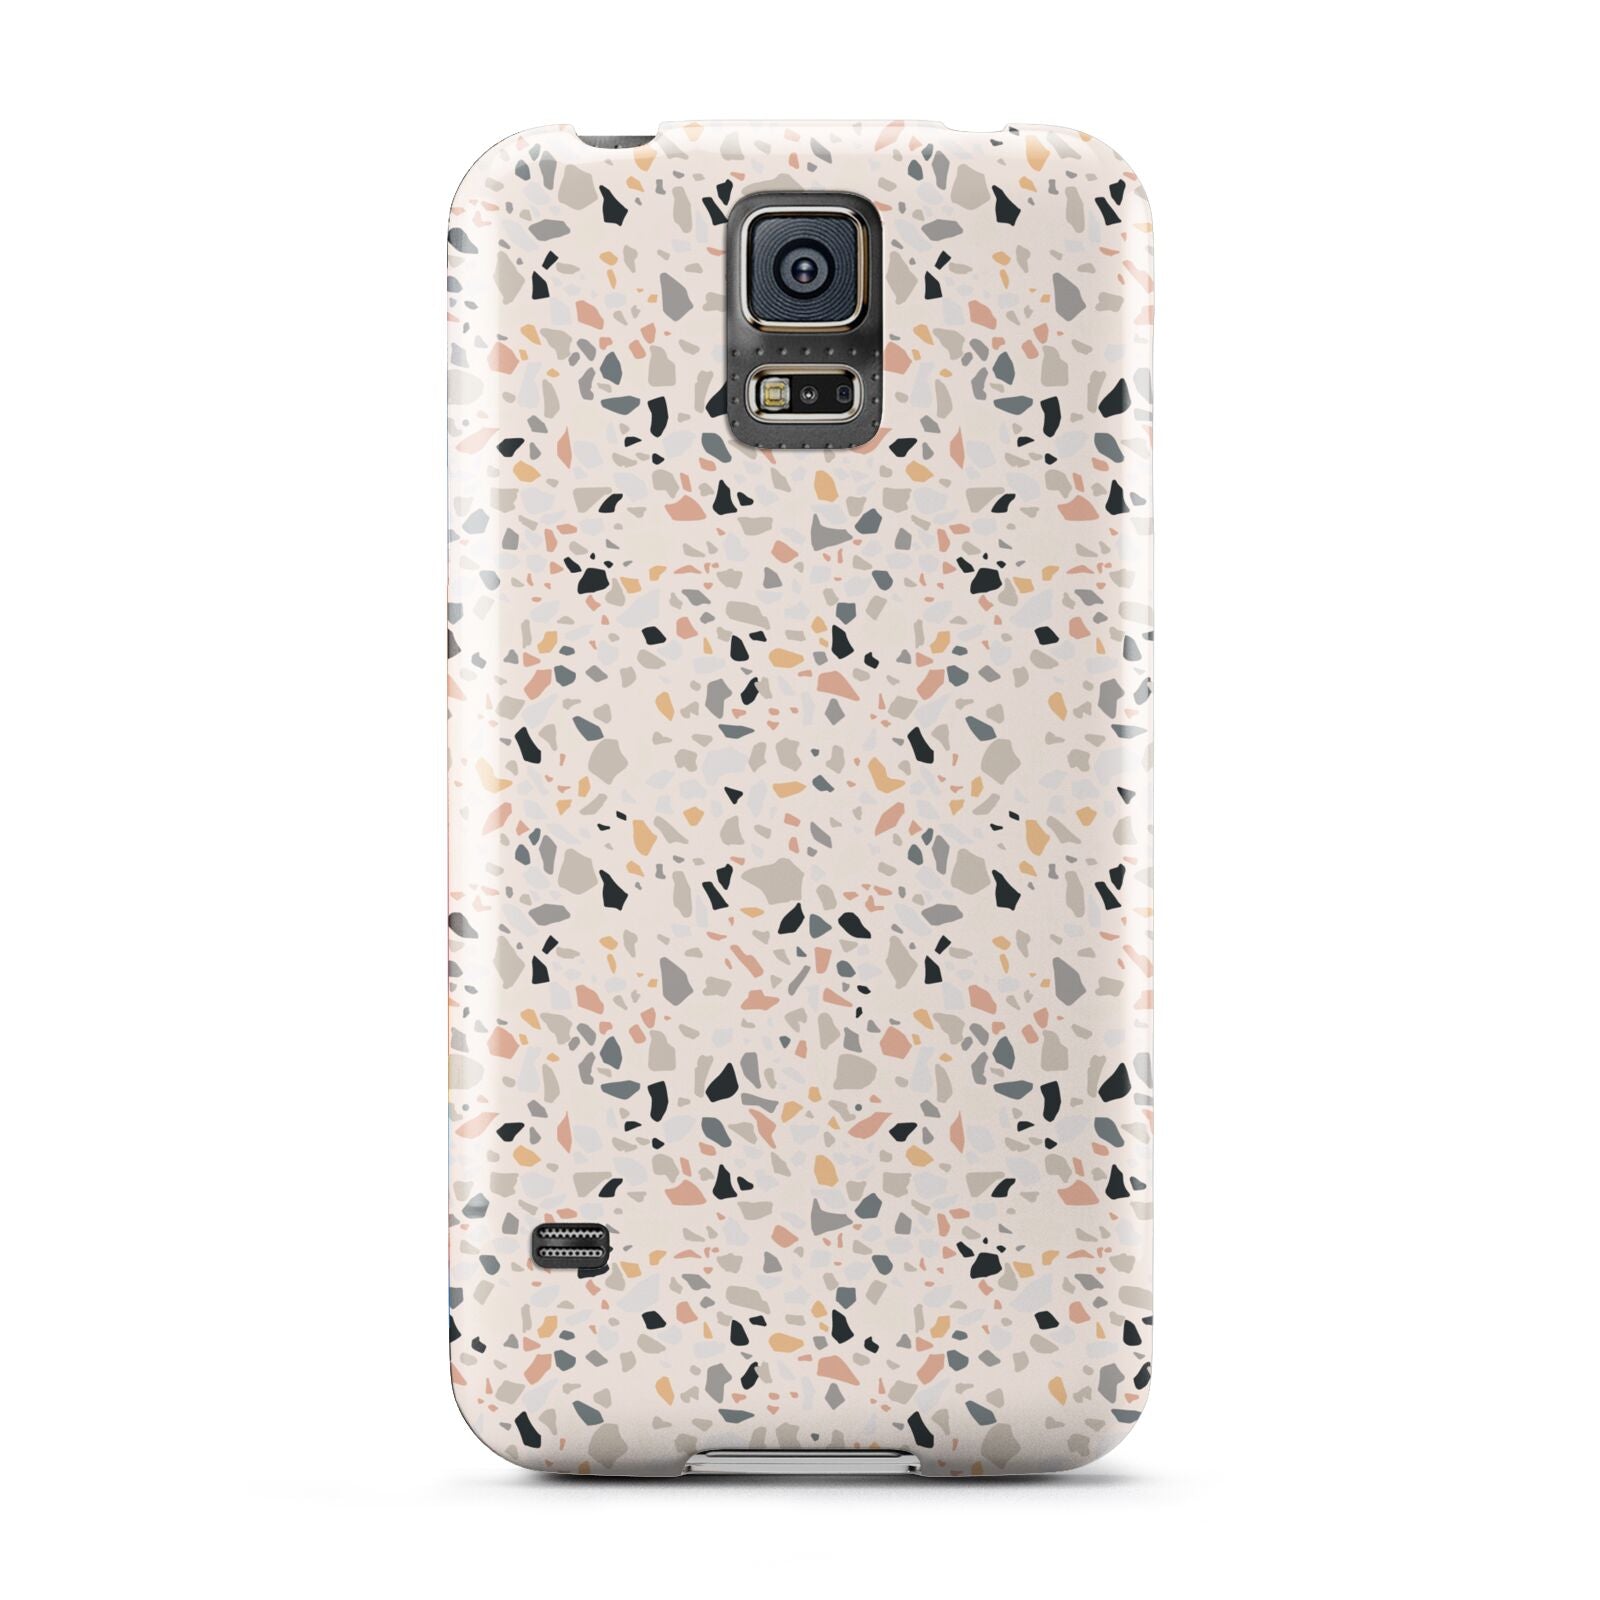 Terrazzo Stone Samsung Galaxy S5 Case